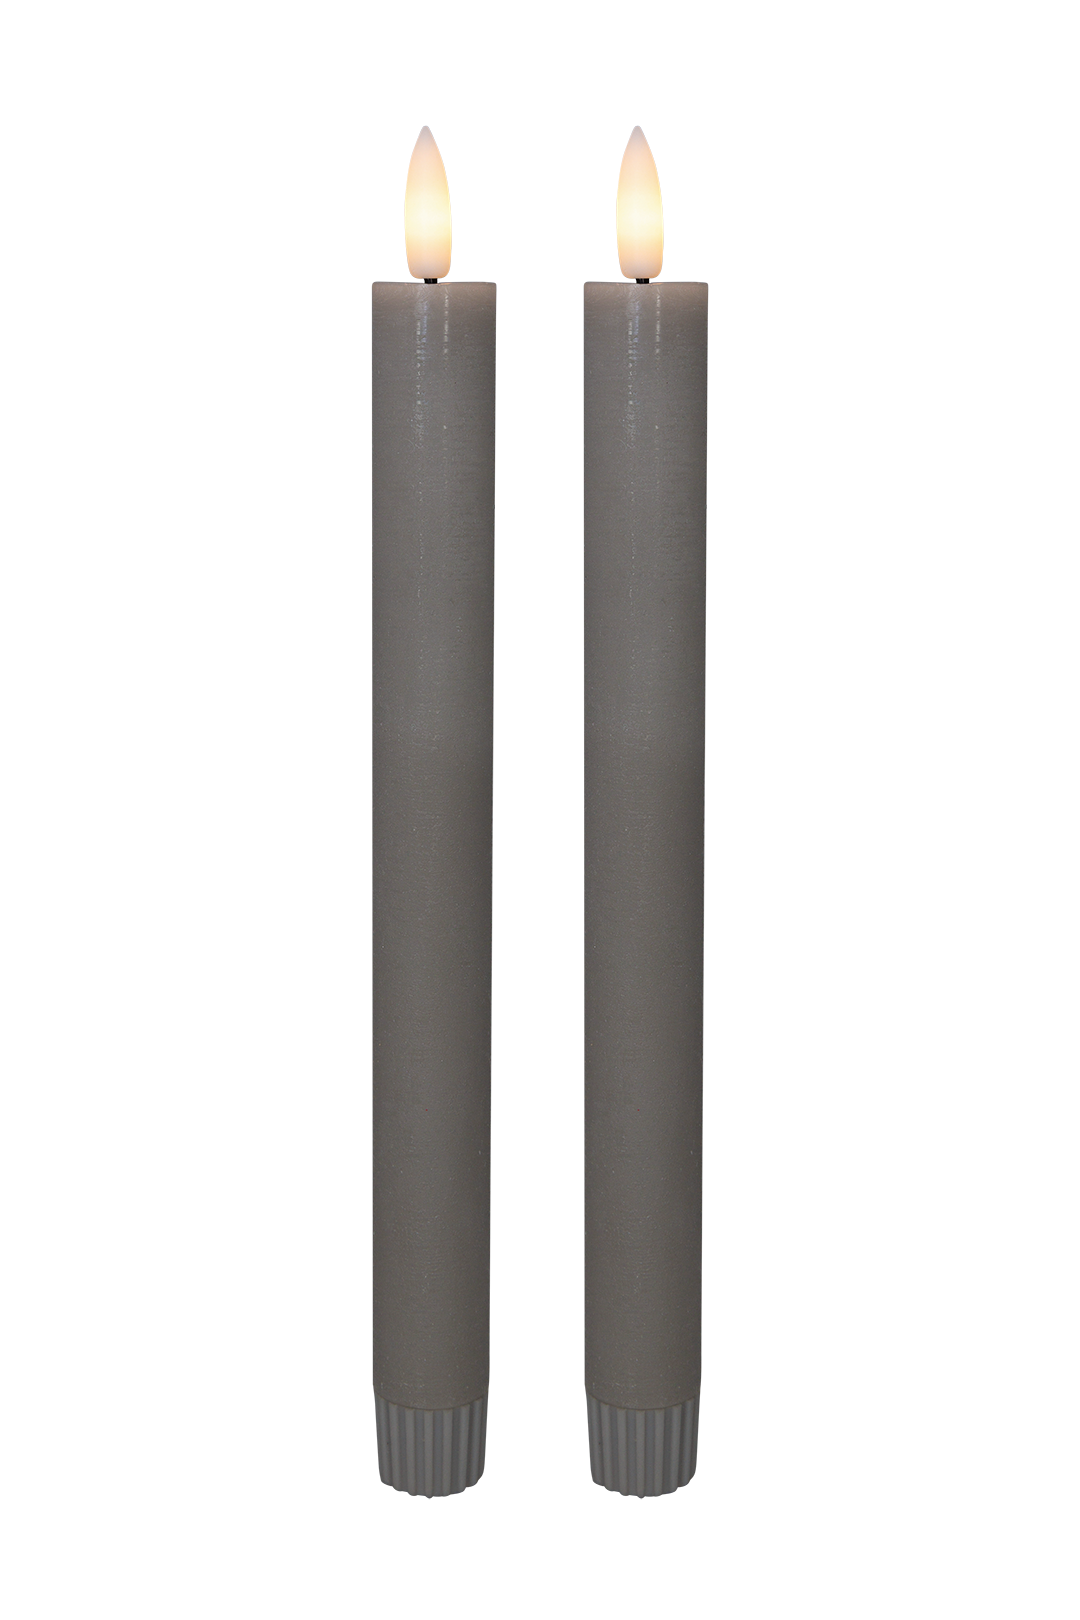 Cozzy kronelys, 3D flamme, 22,2 cm, grå, 2 stk (bruges med fjernbetjening)